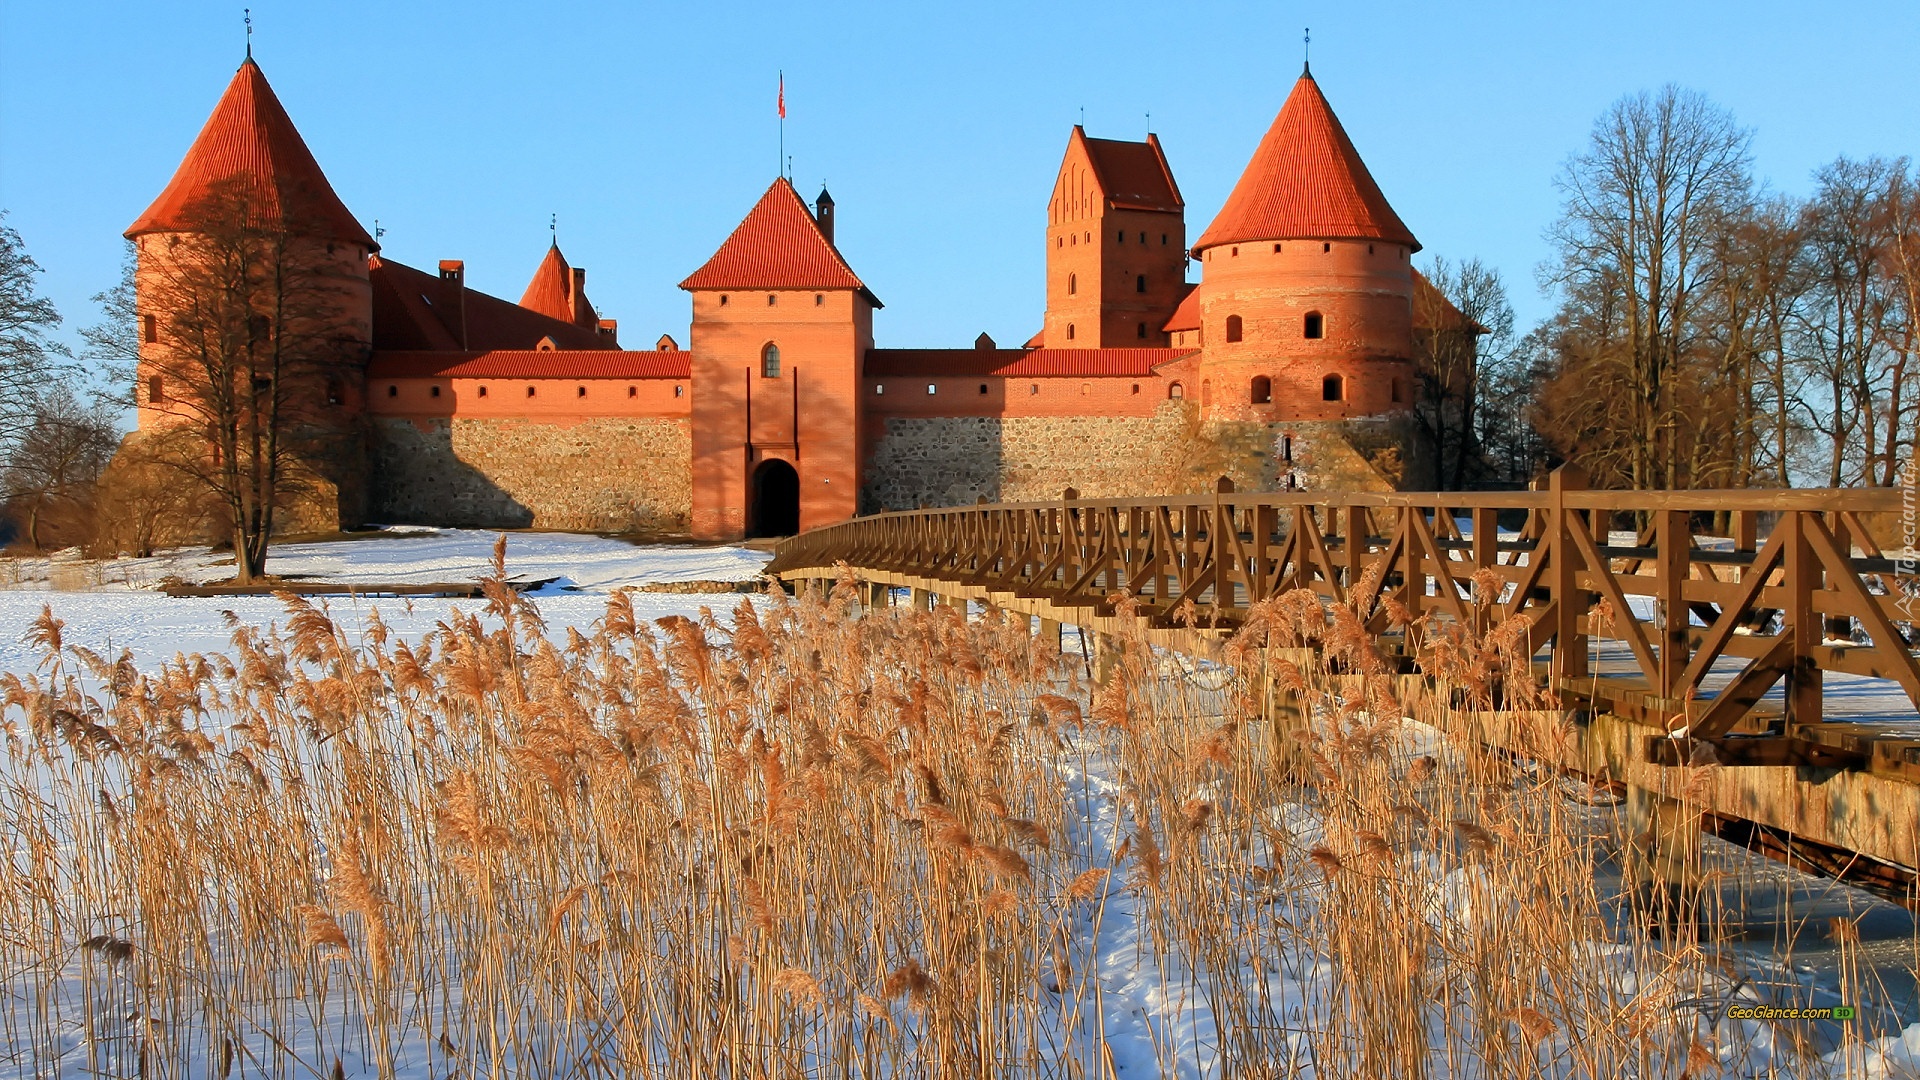 Zamek w Trokach, Litwa, Zima